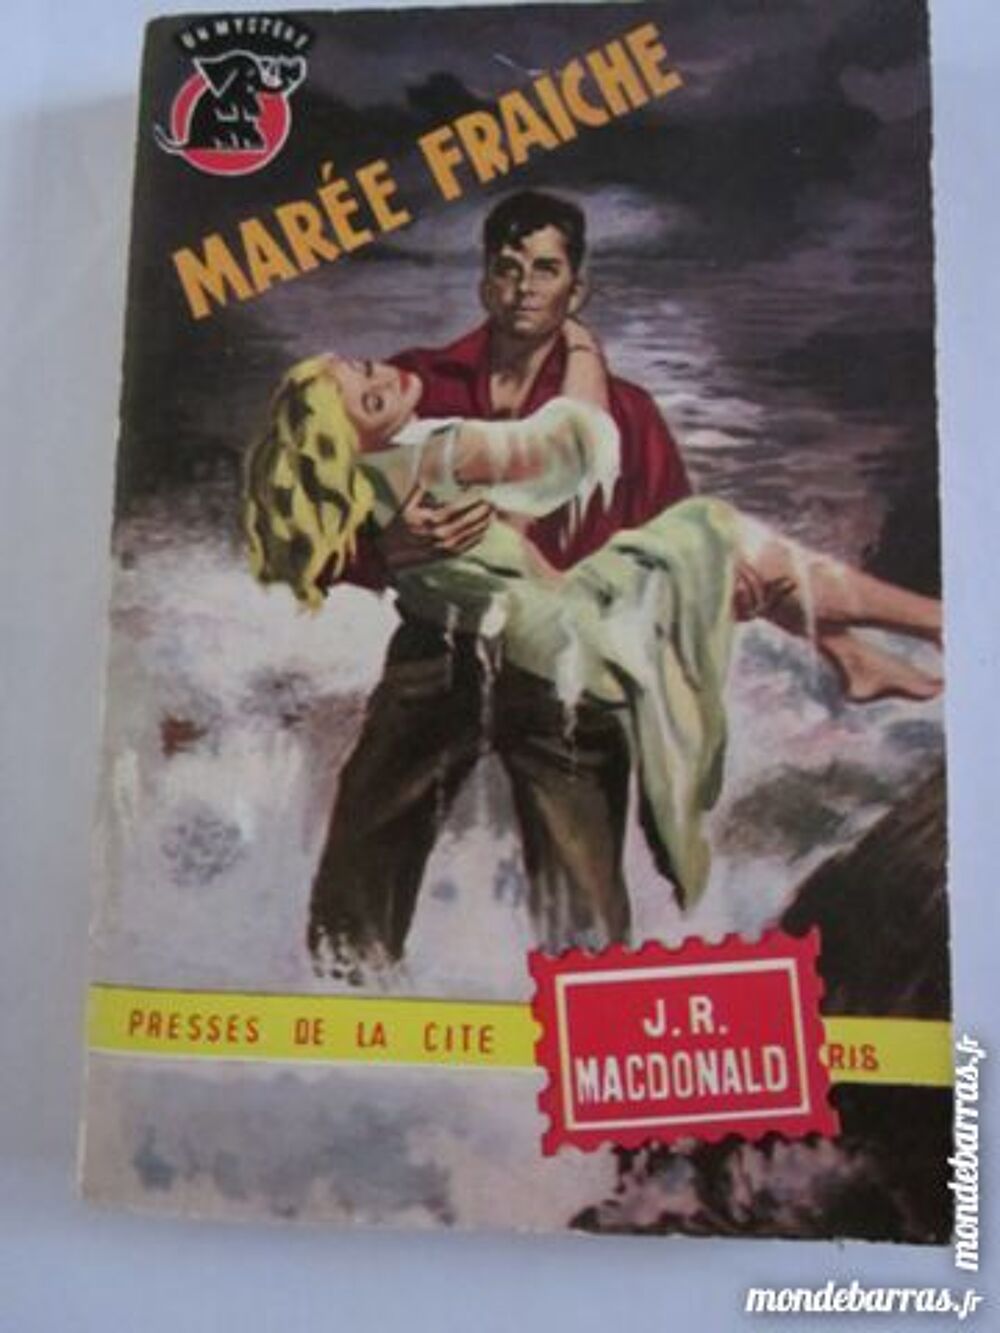 MAREE FRAICHE par J. R. MACDONALD Livres et BD